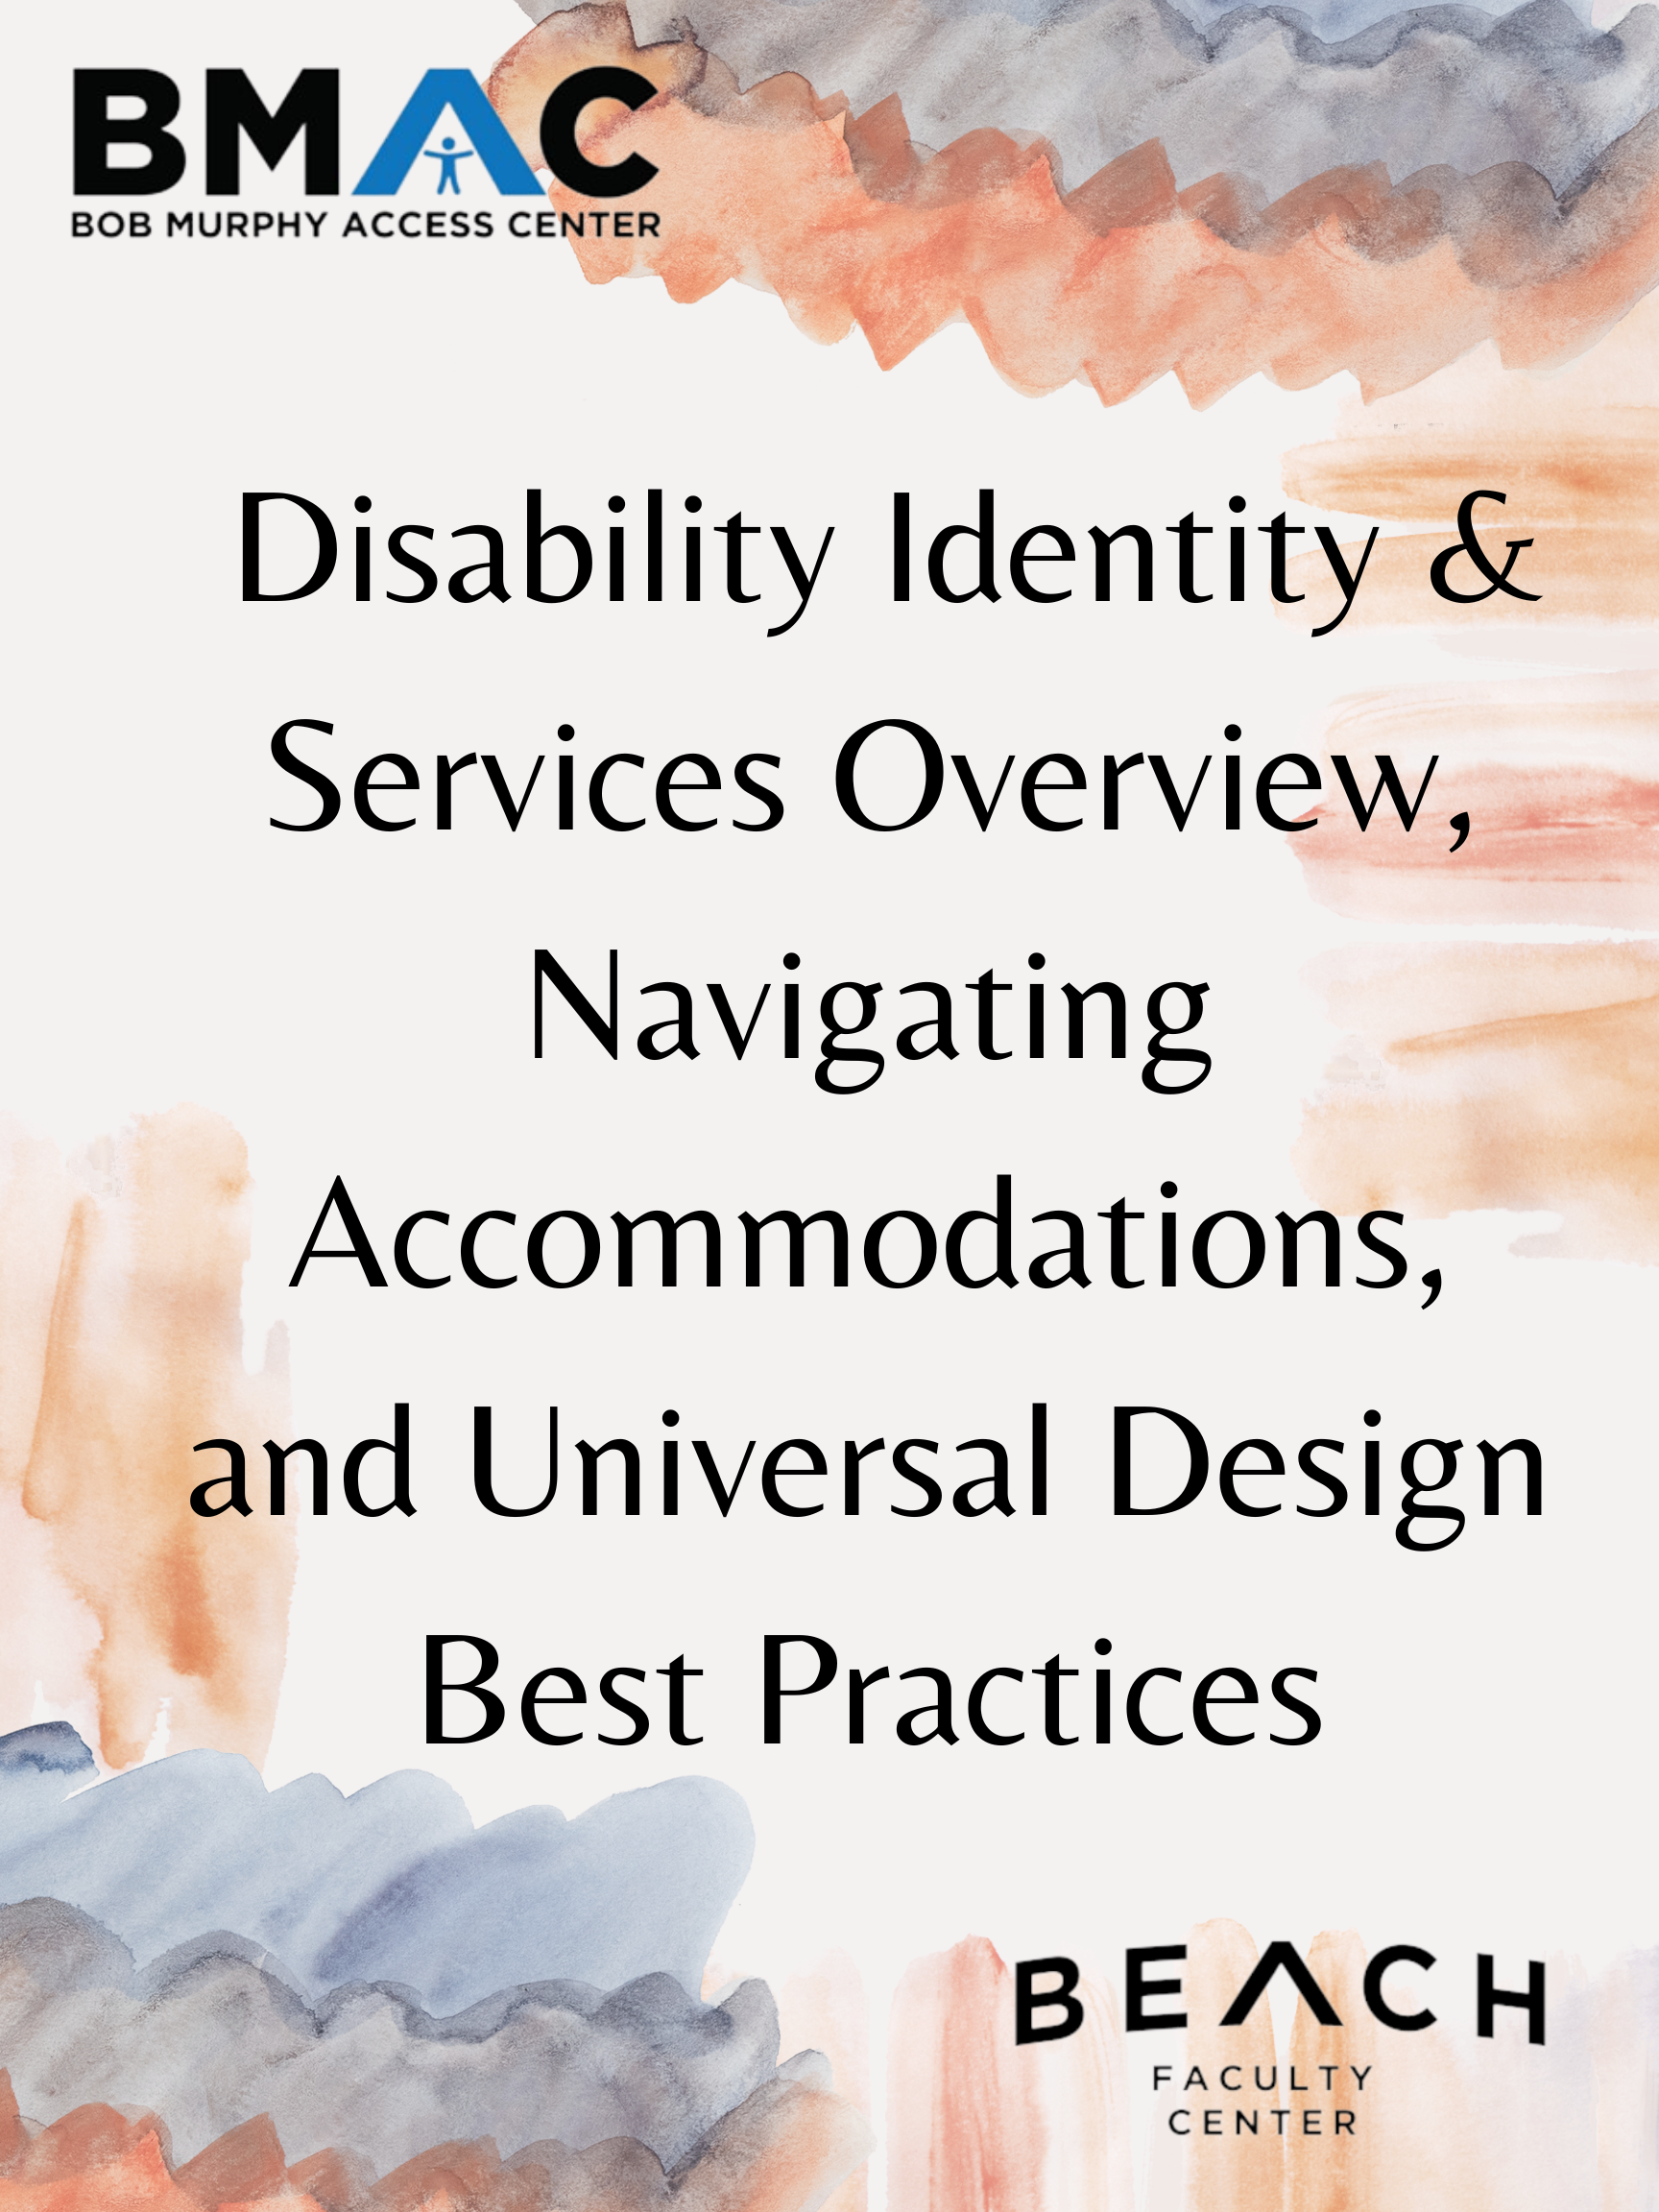 BMAC - Disability Identity